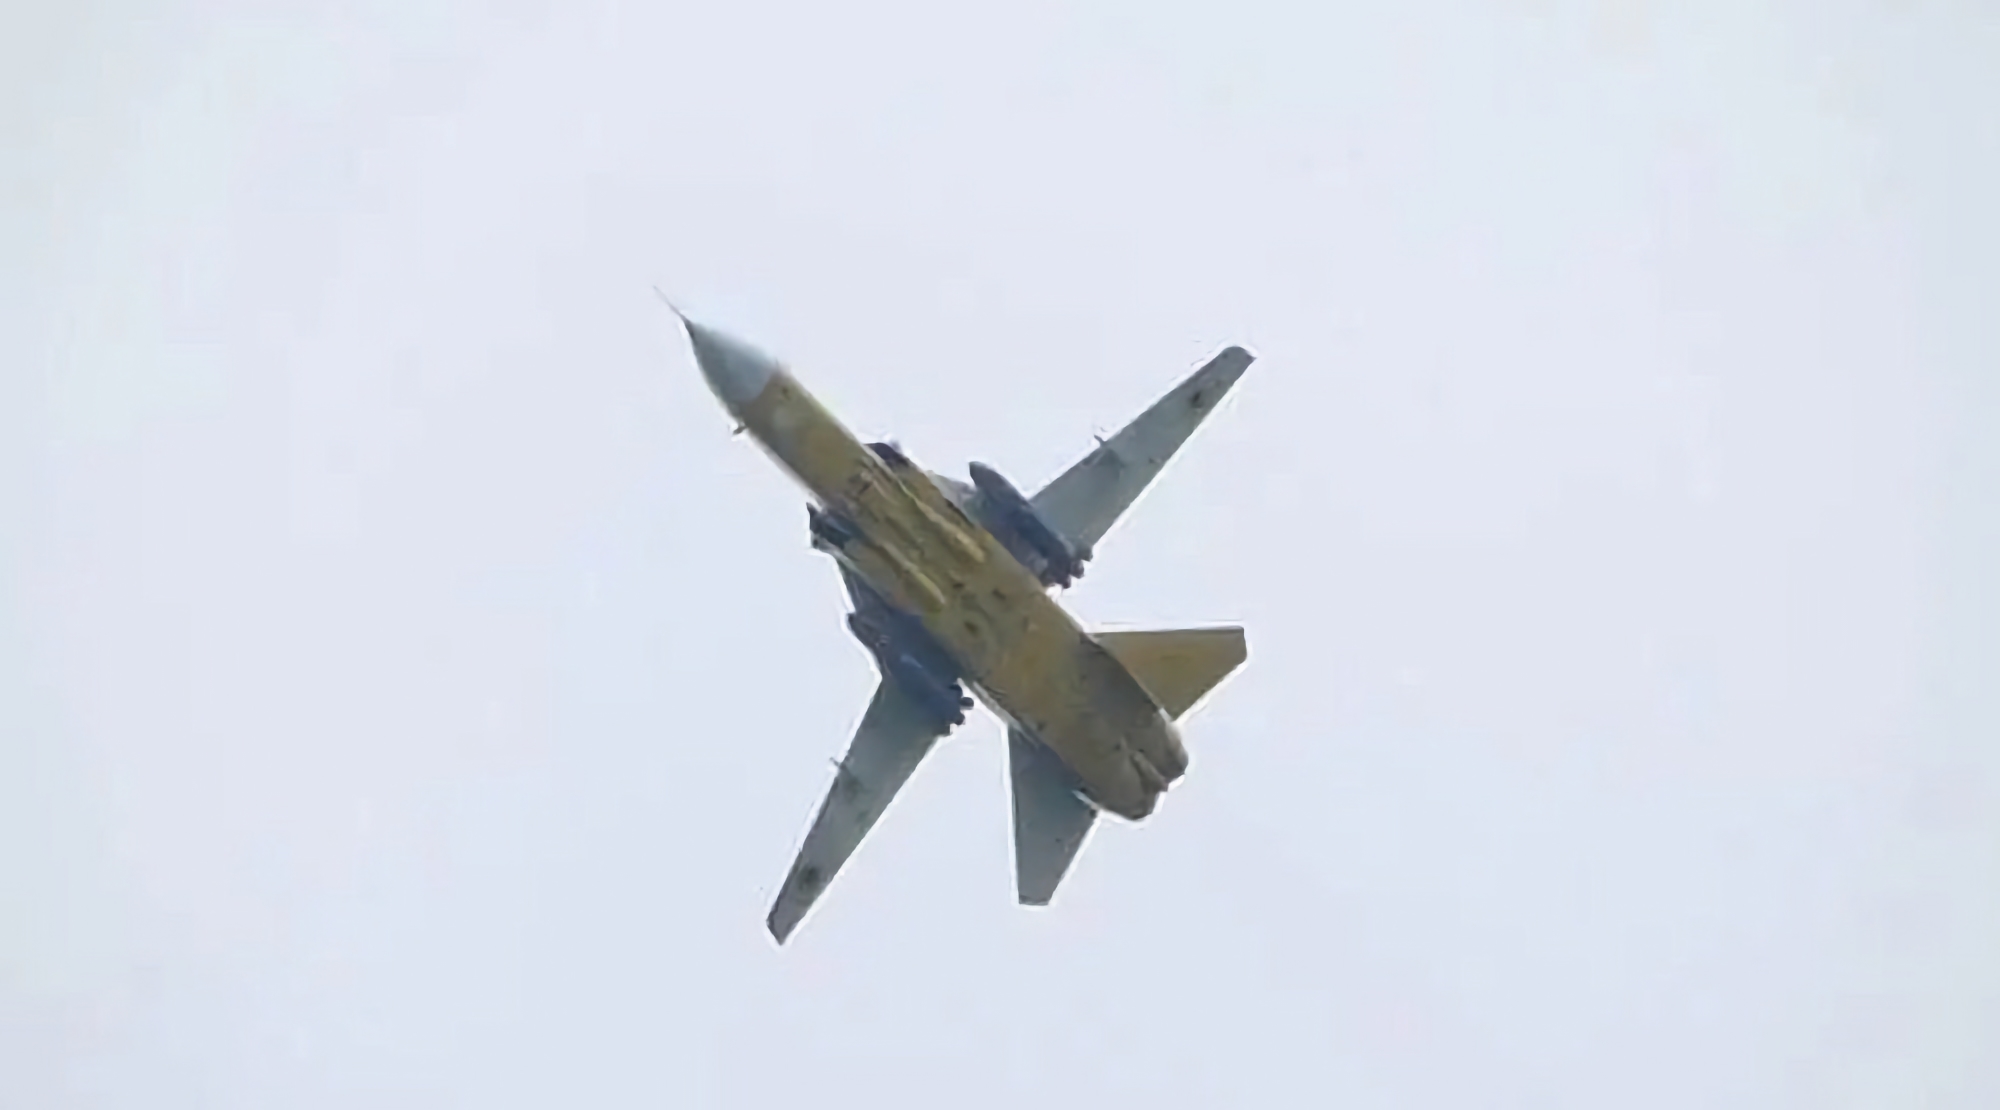 Oekraïense Su-24 bommenwerpers hebben pylonen van Britse Tornado vliegtuigen, waardoor ze Storm Shadow raketten kunnen dragen.